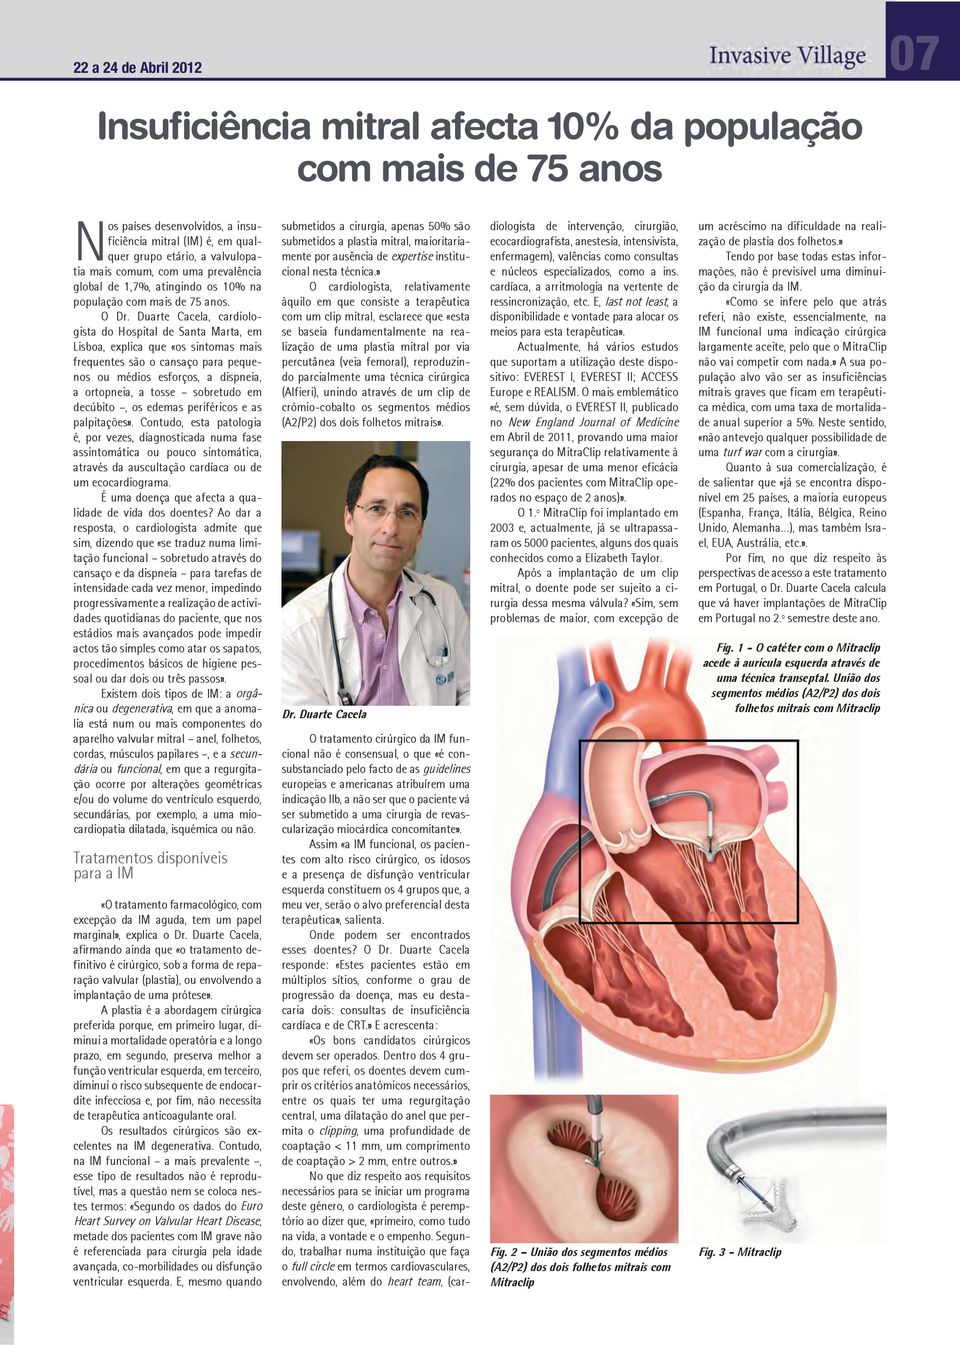 Duarte Cacela, cardiologista do Hospital de Santa Marta, em Lisboa, explica que «os sintomas mais frequentes são o cansaço para pequenos ou médios esforços, a dispneia, a ortopneia, a tosse sobretudo